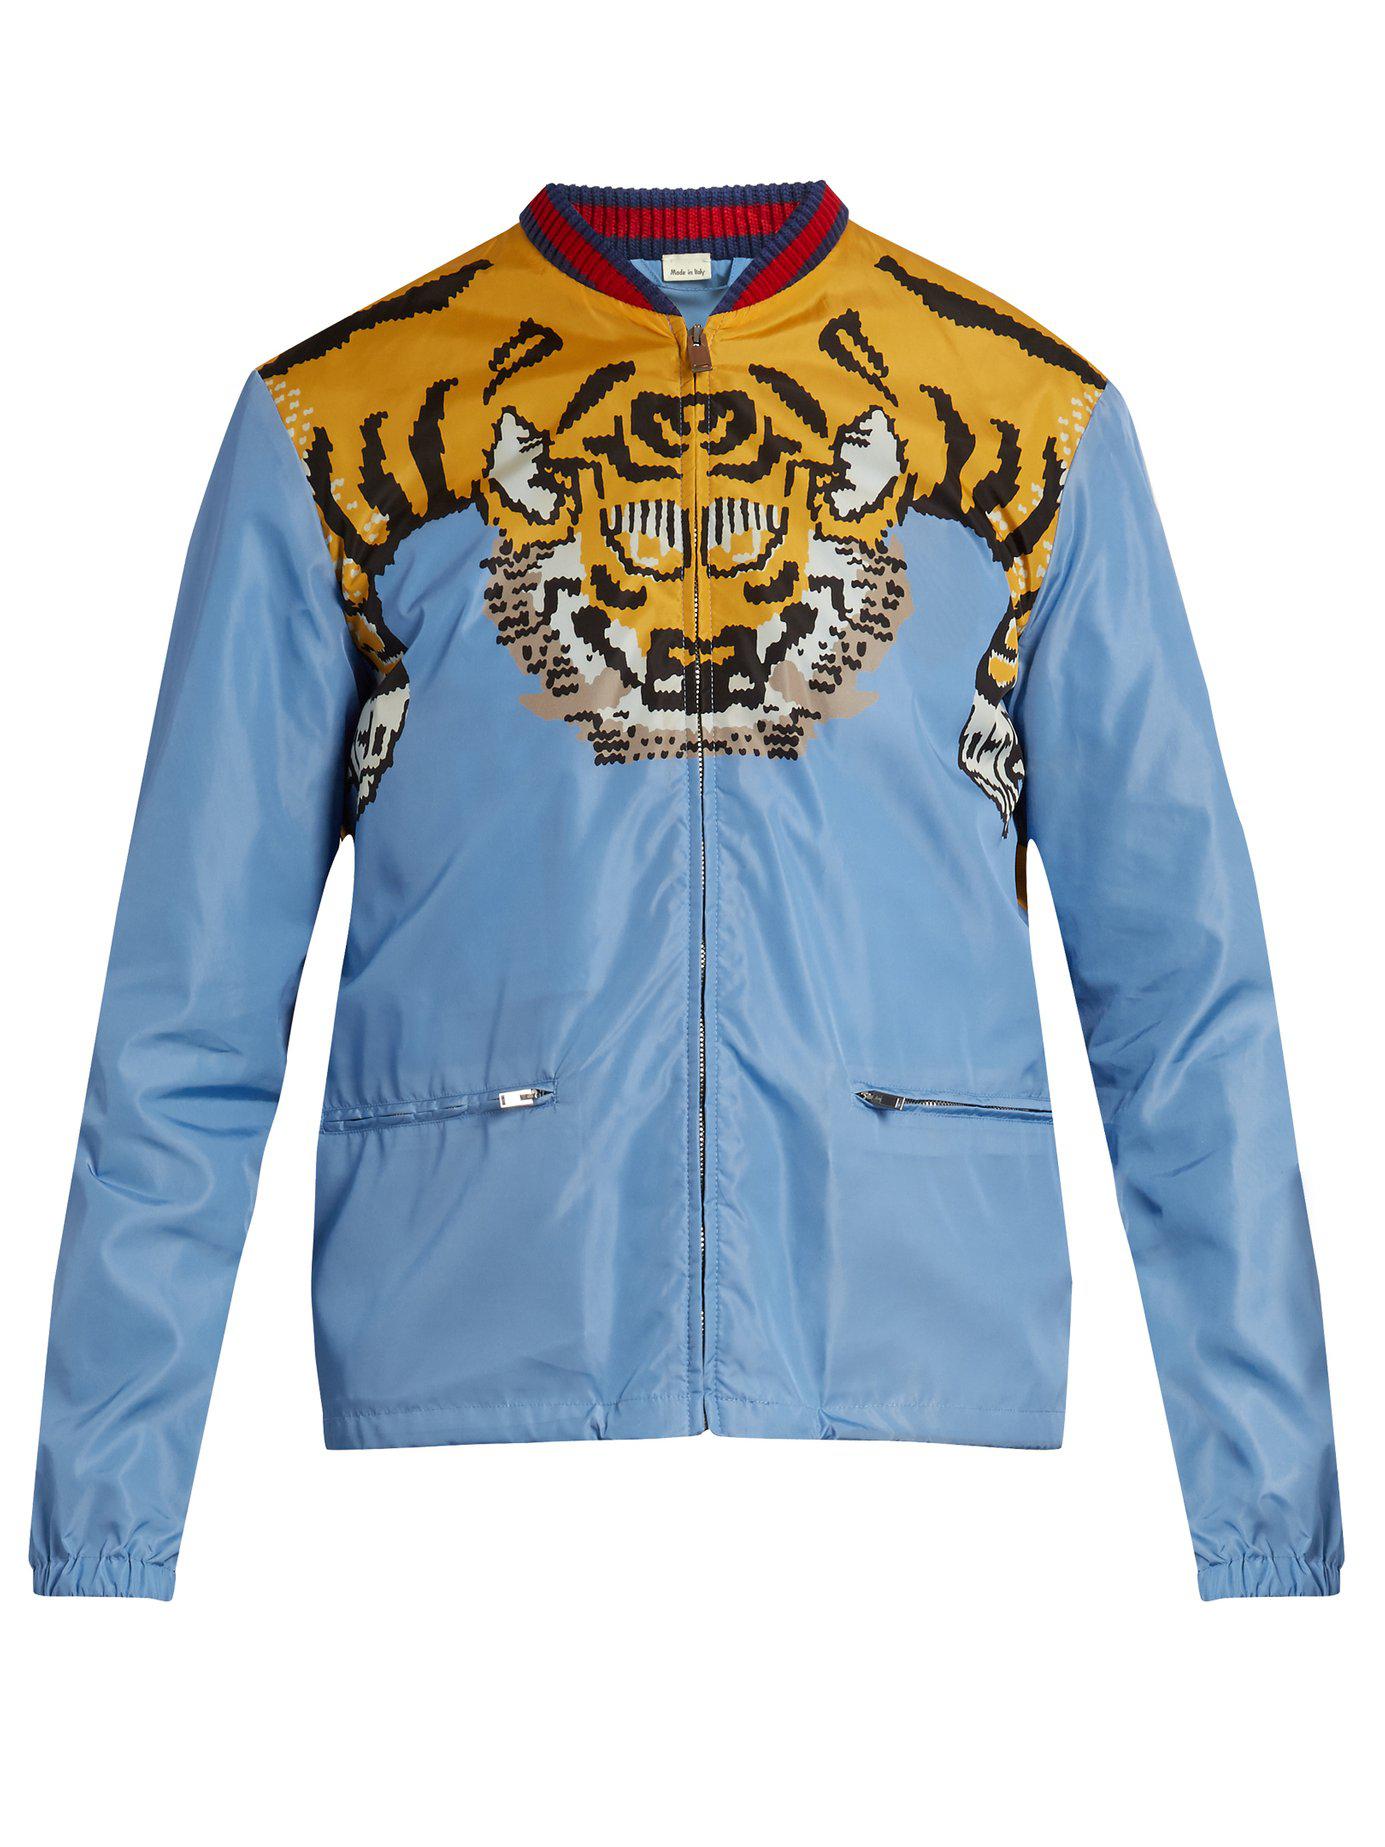 Erhvervelse gårdsplads bestøve Gucci Tiger Print Bomber Jacket in Blue for Men | Lyst Australia